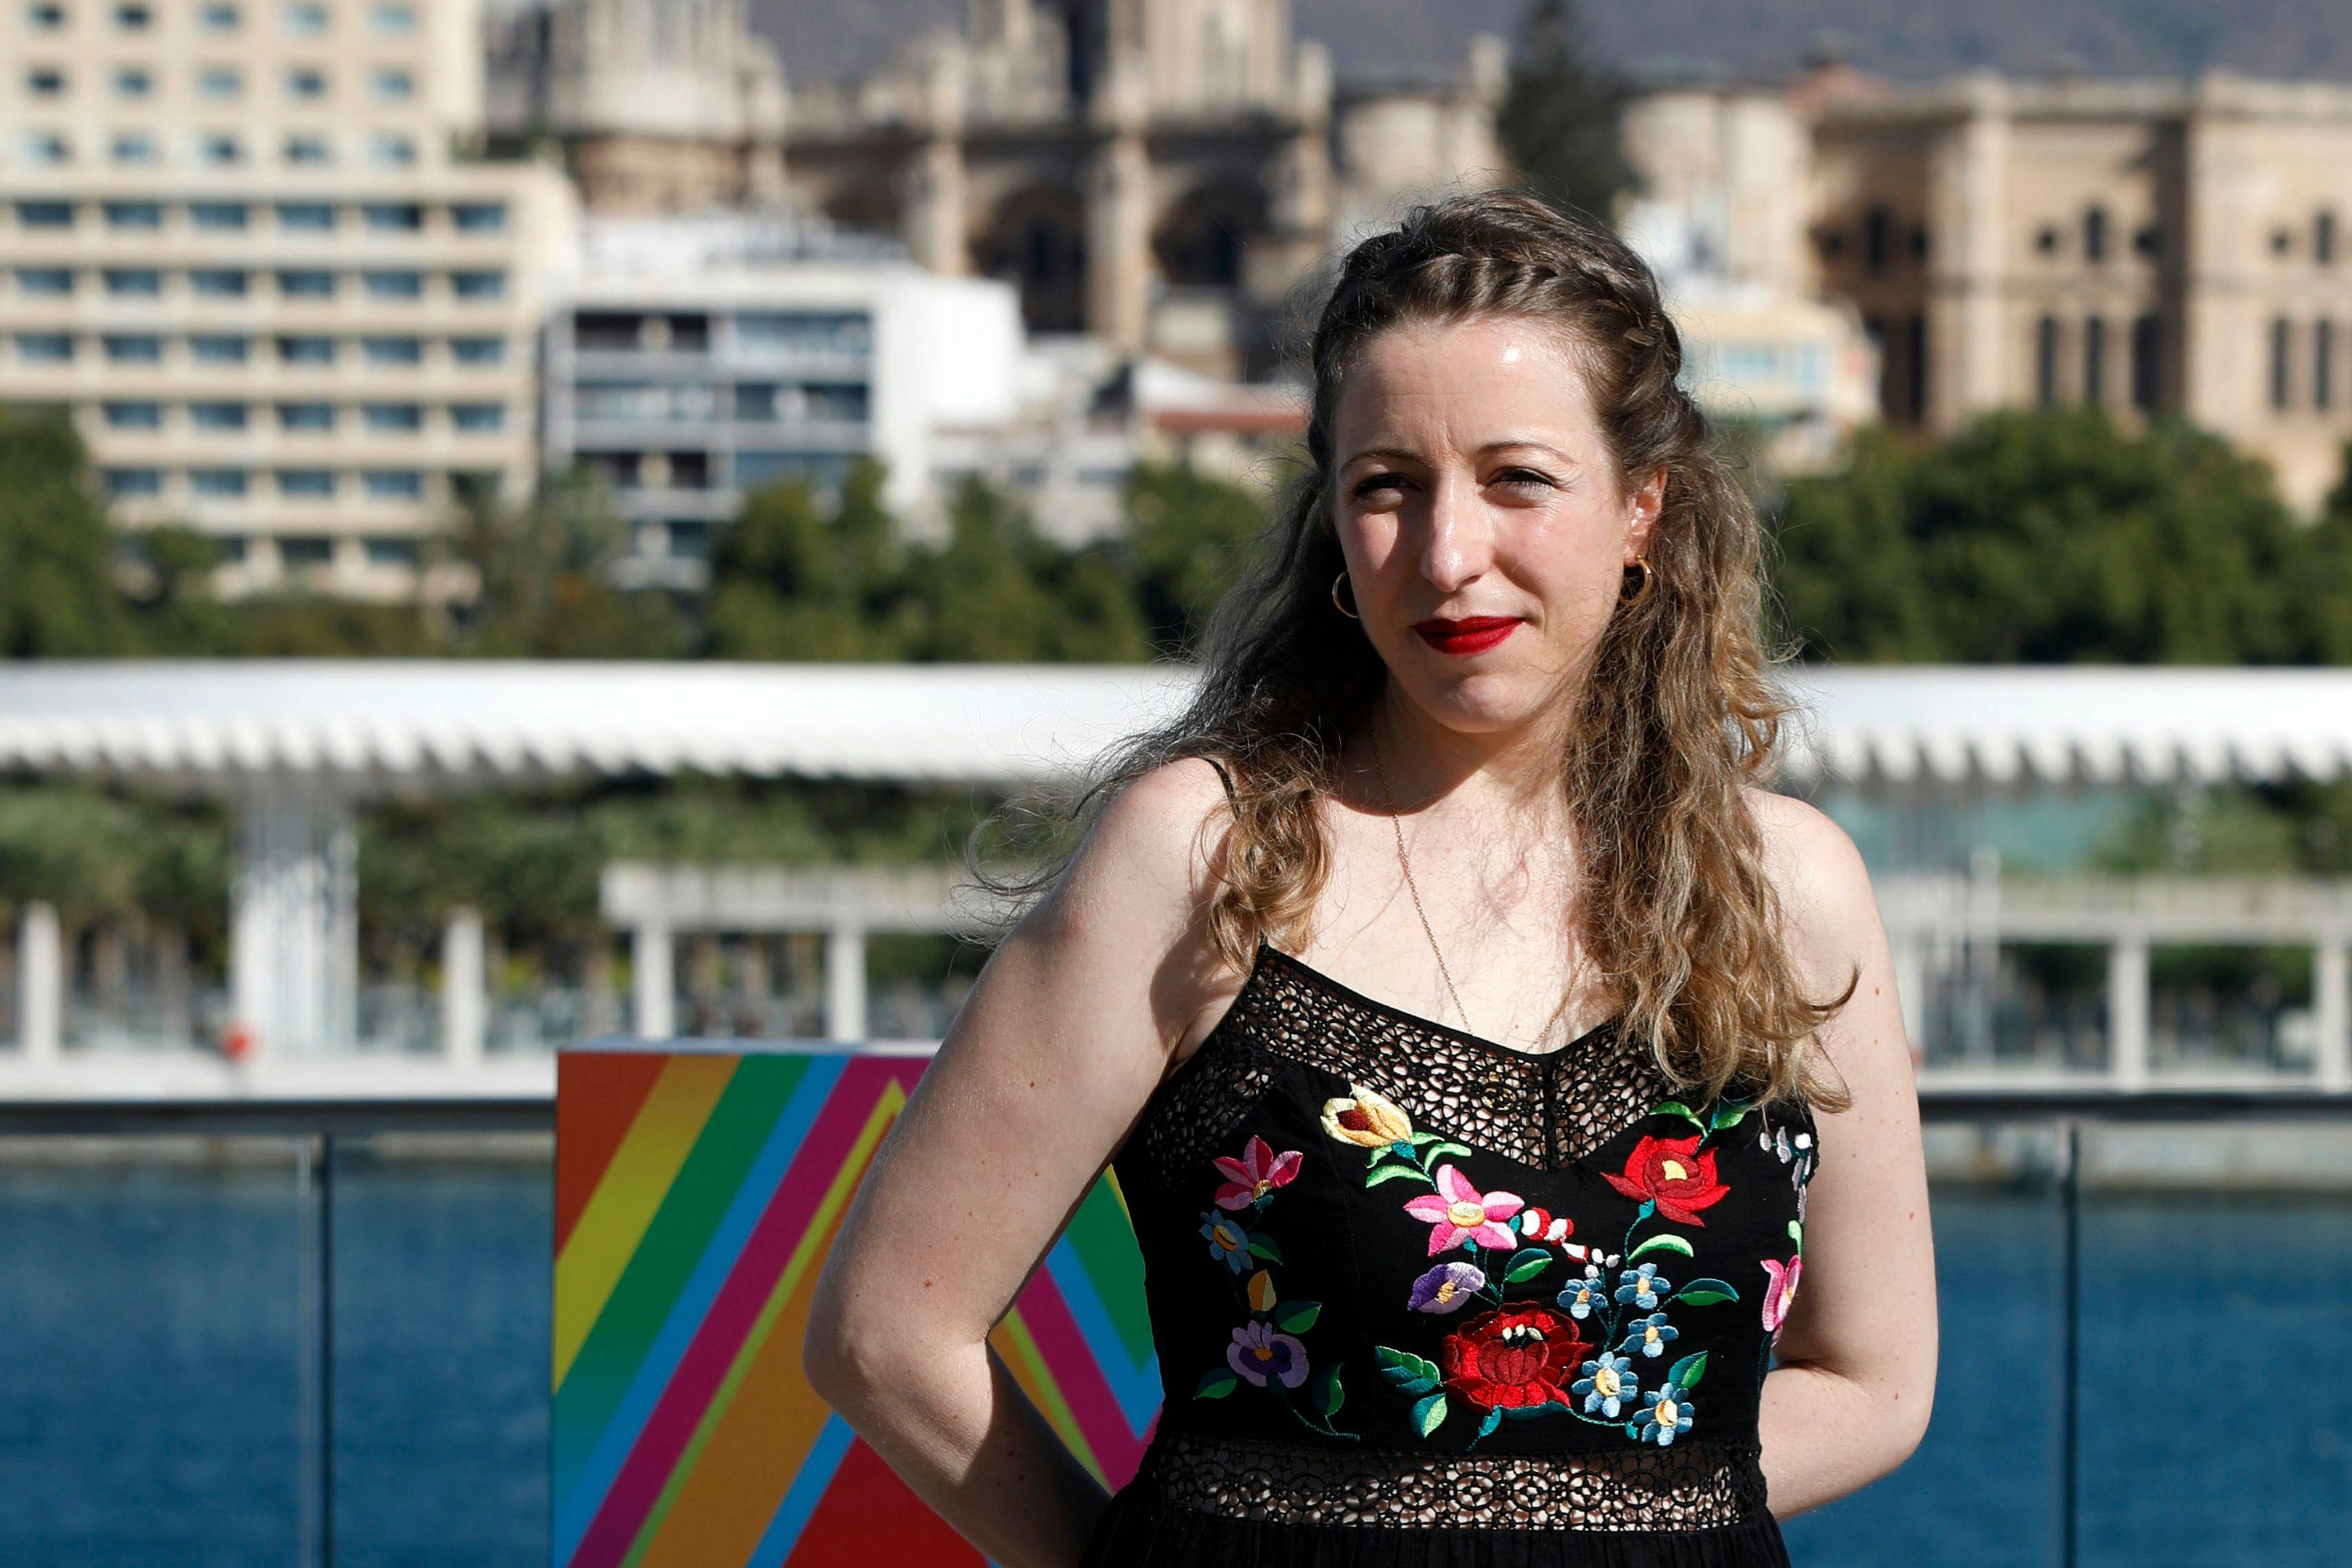 La directora Pilar Palomero posa en el photocall del Festival de Málaga